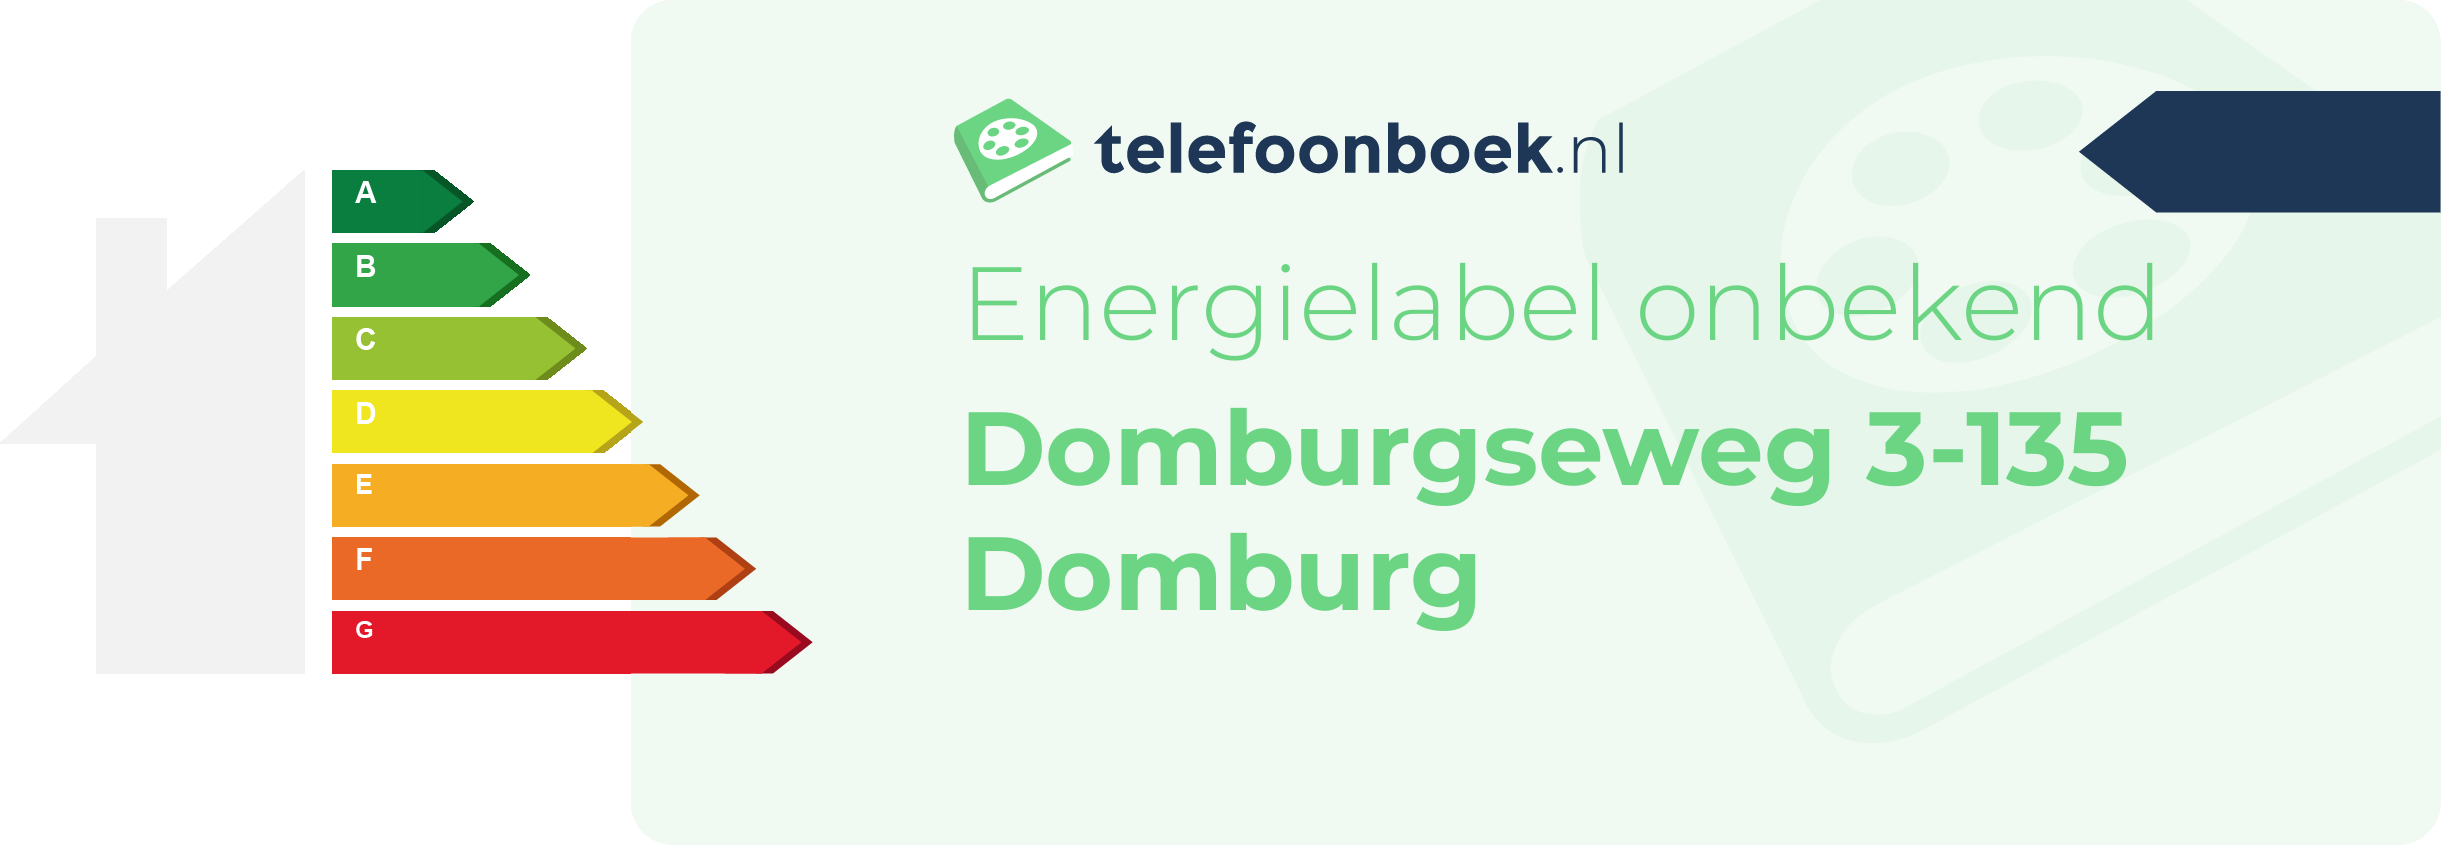 Energielabel Domburgseweg 3-135 Domburg